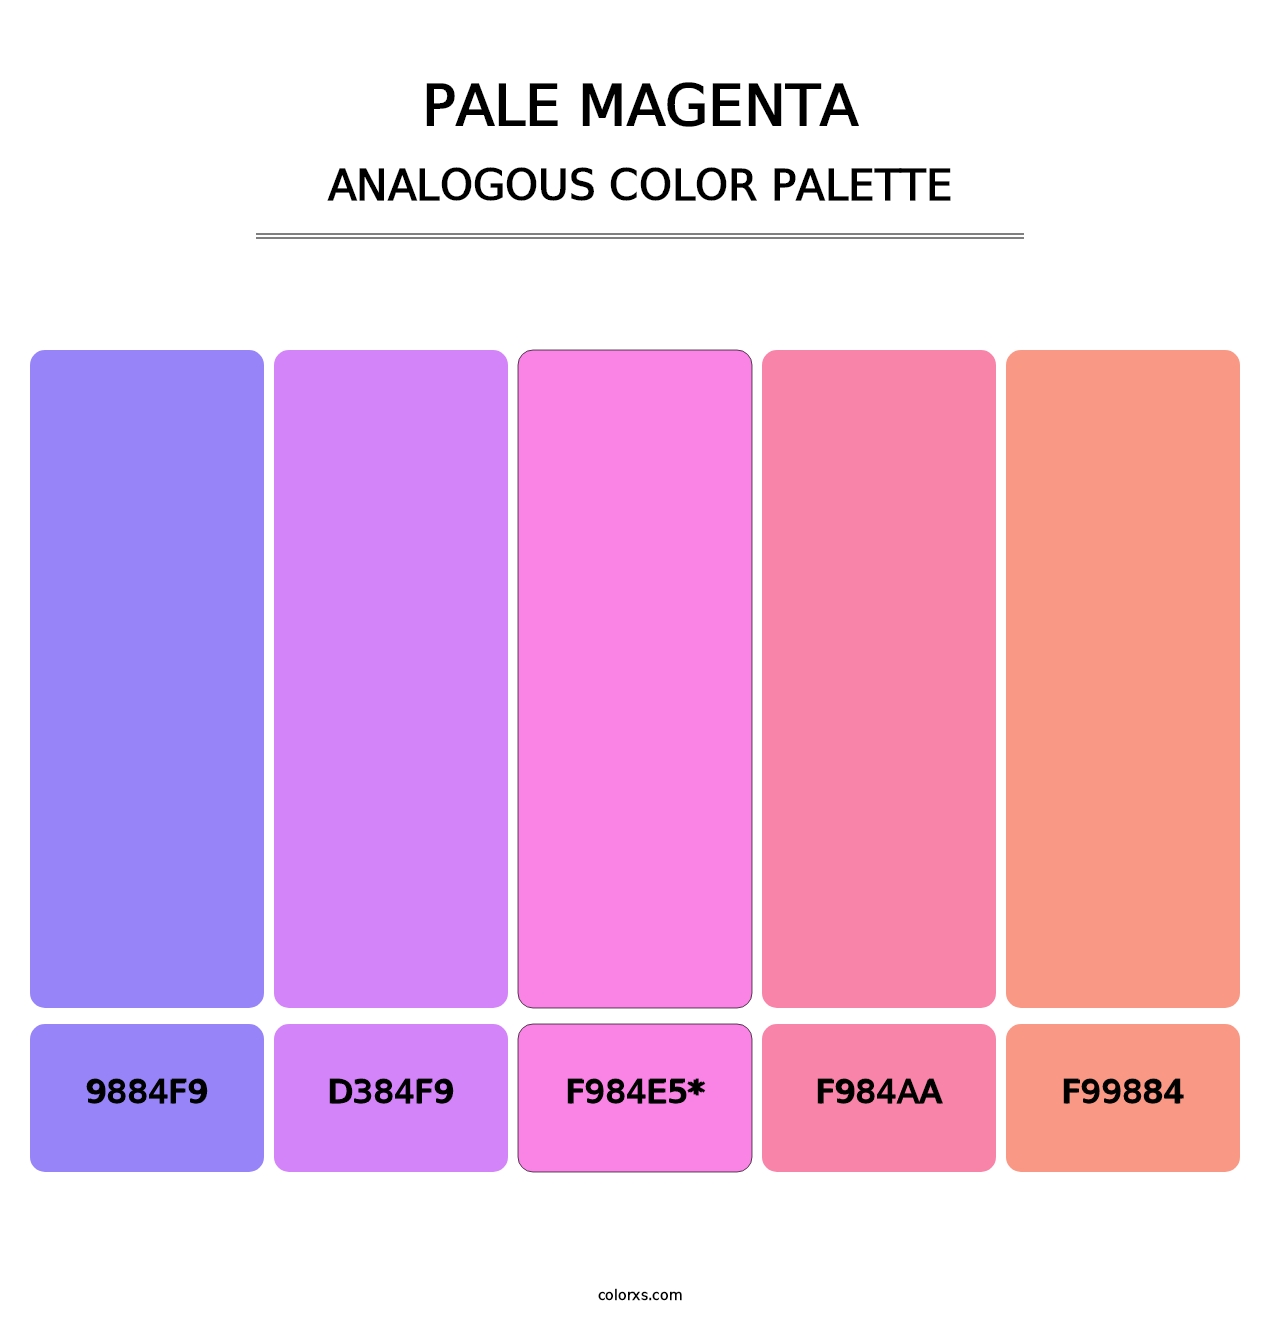 Pale Magenta - Analogous Color Palette